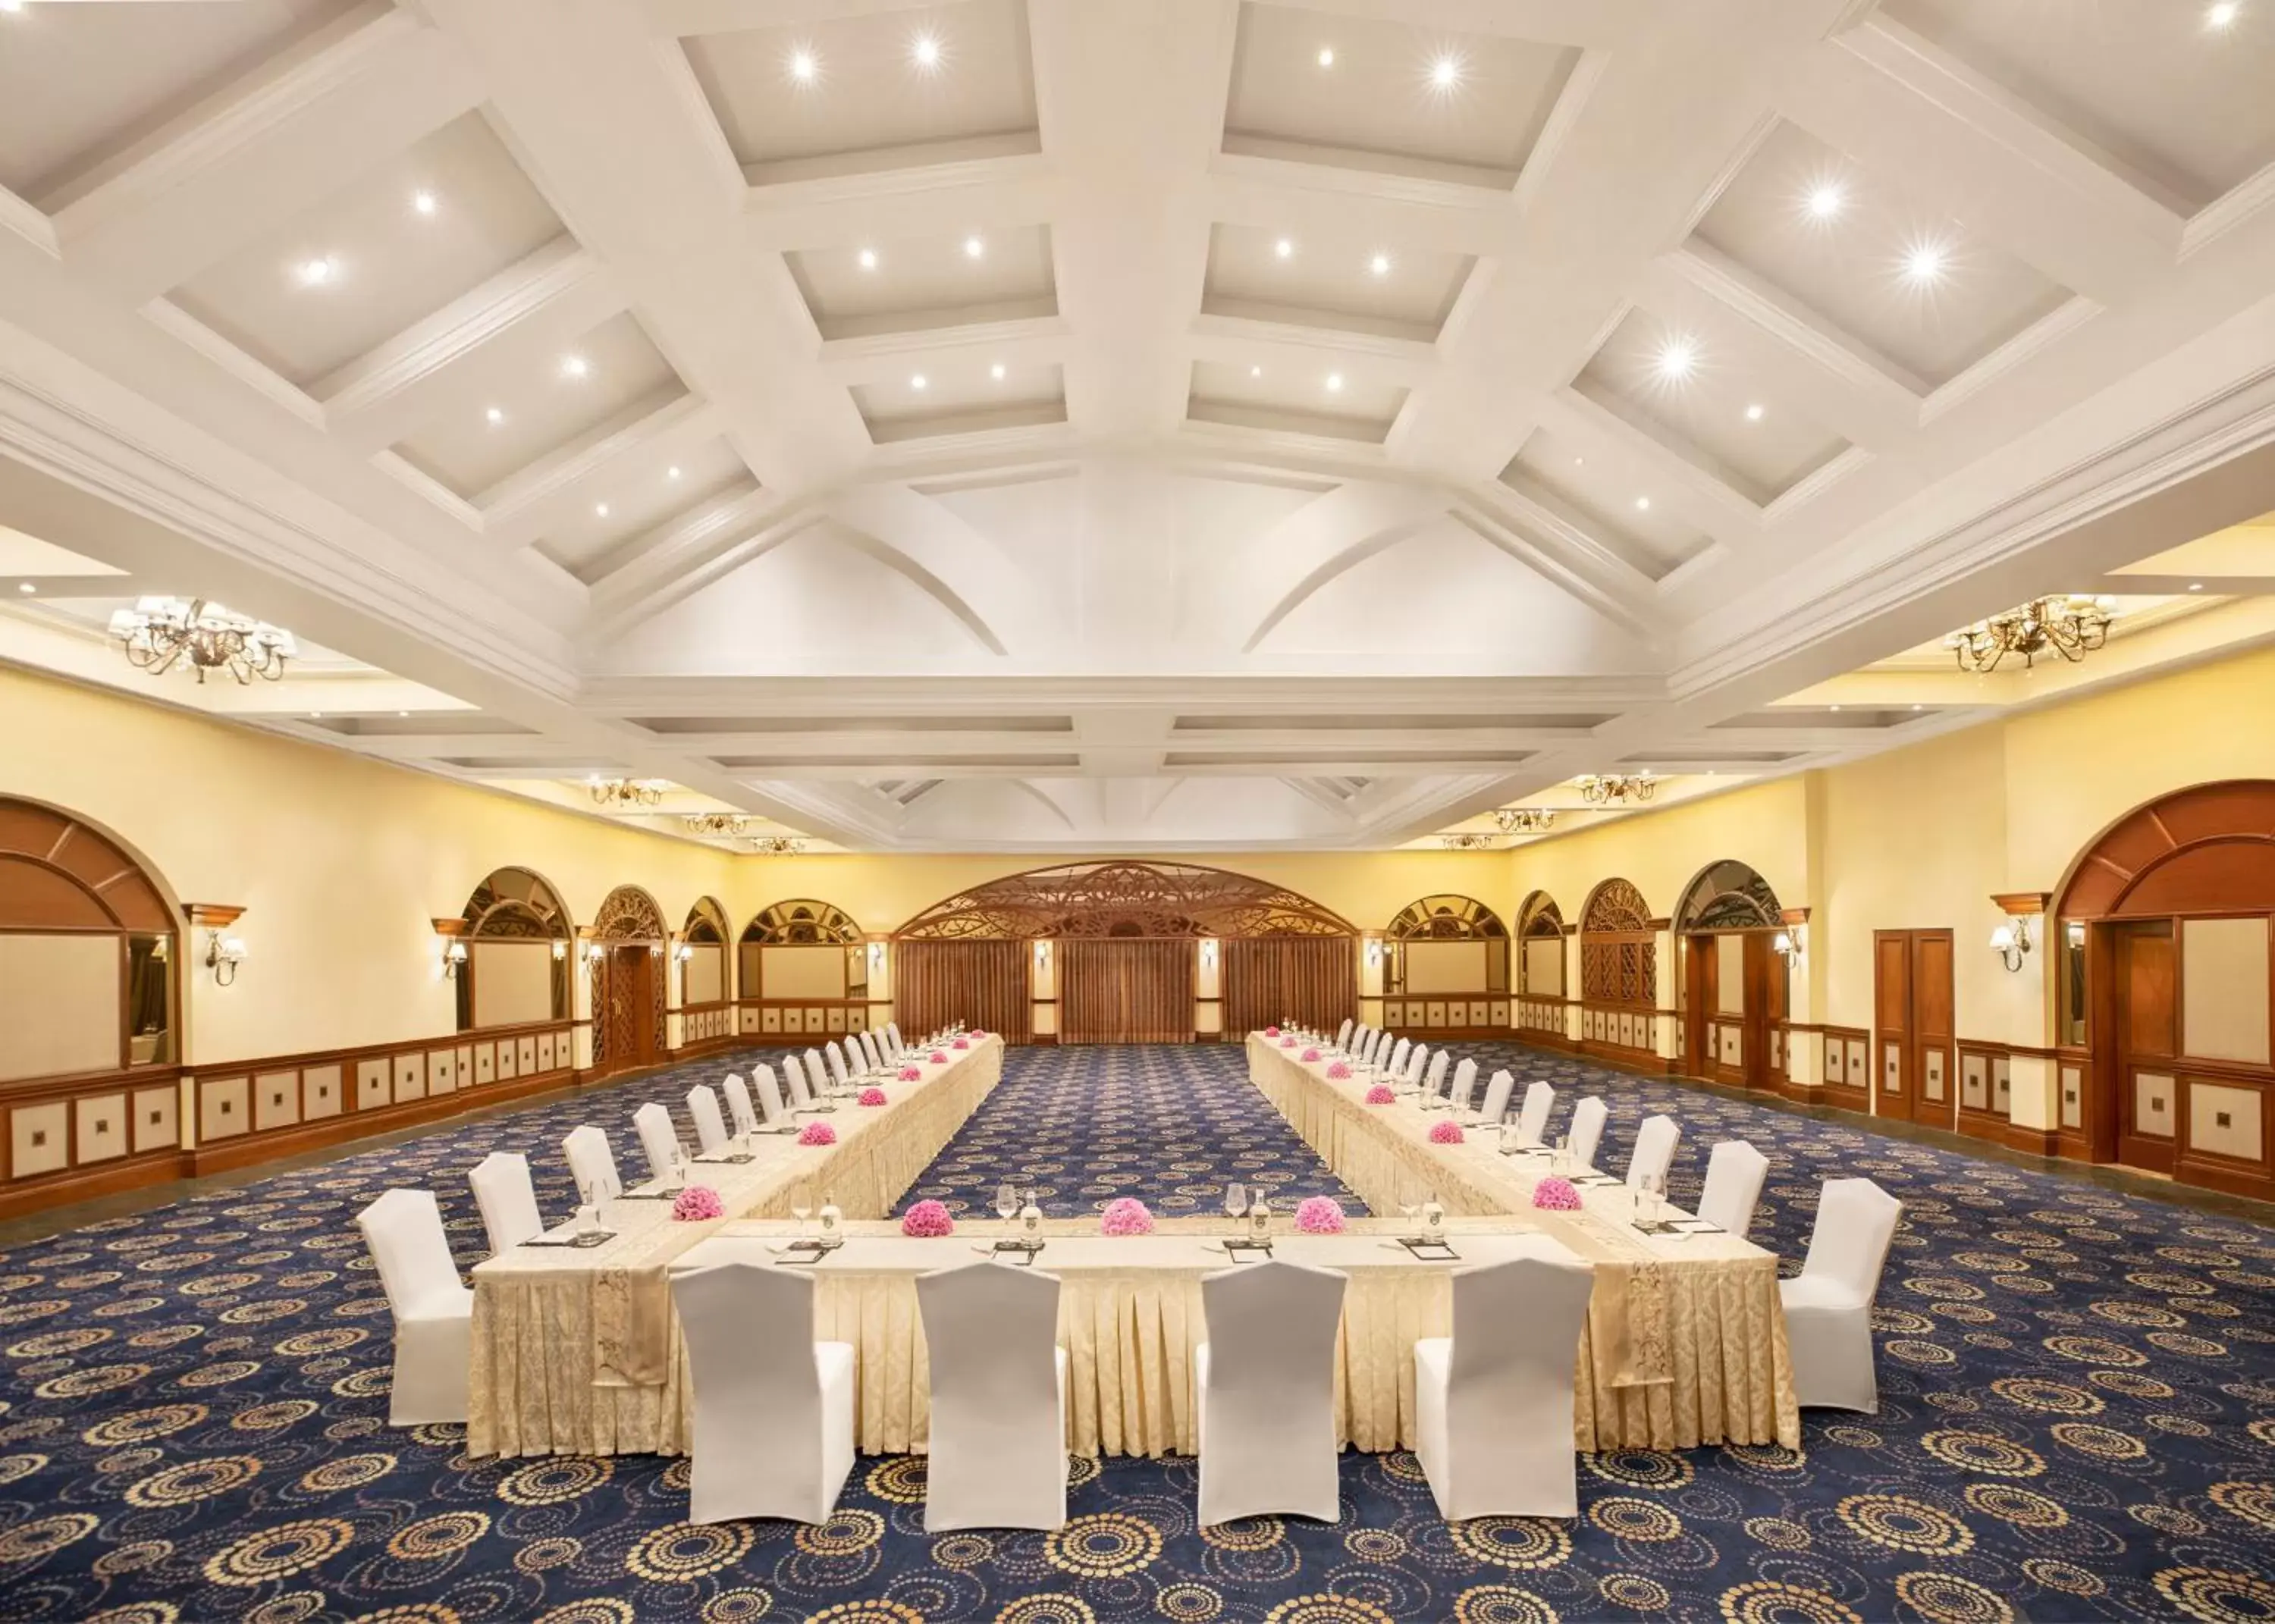 Banquet/Function facilities, Banquet Facilities in Taj Exotica Resort & Spa, Goa